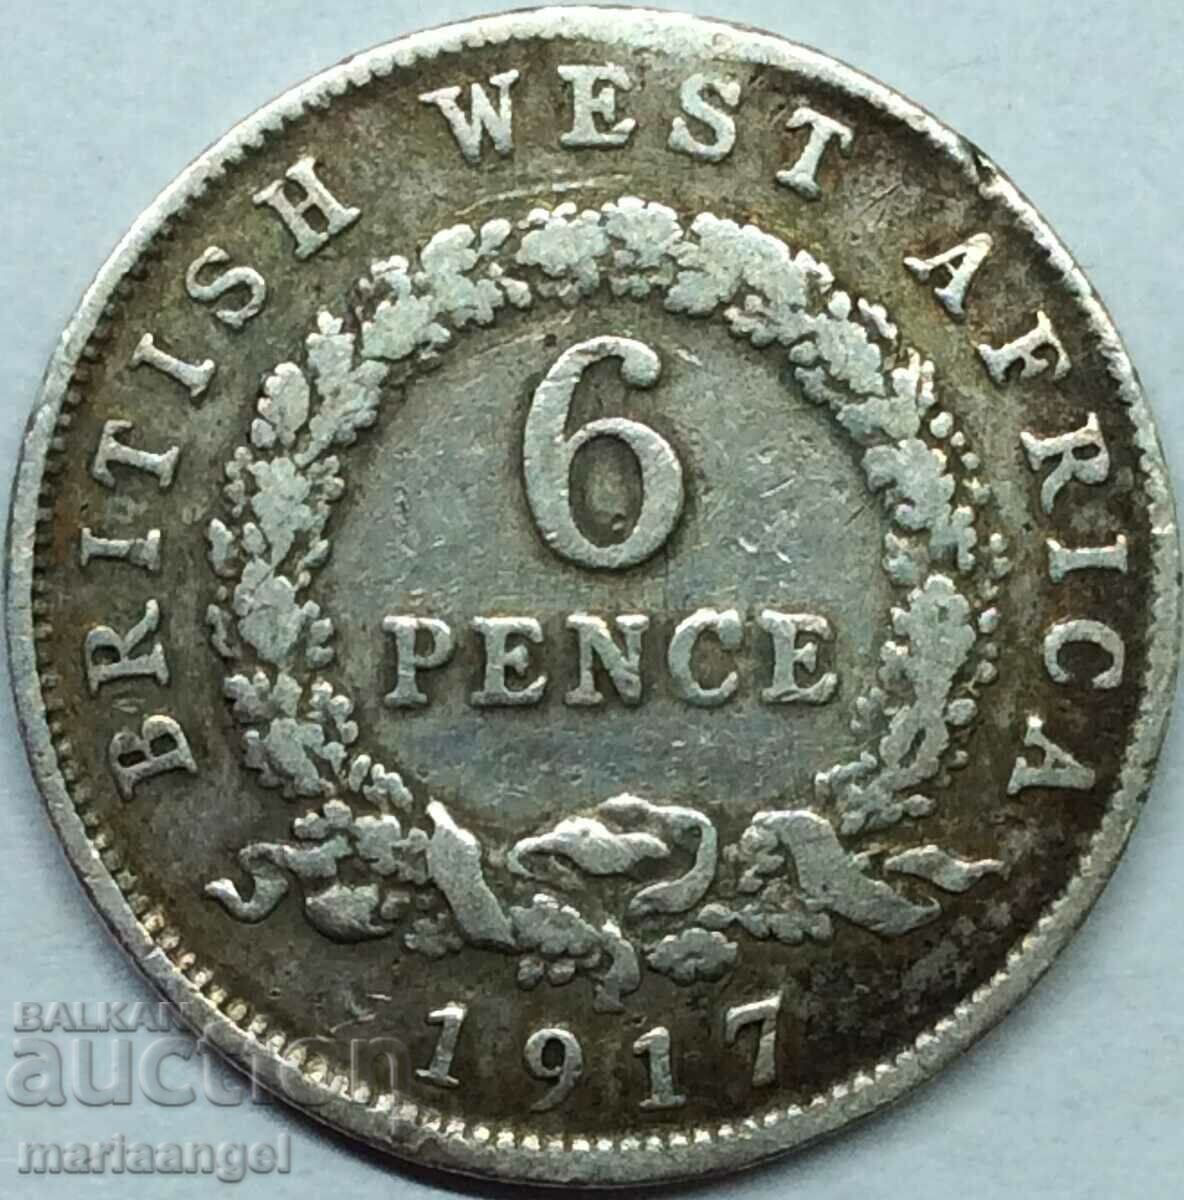 Africa de Vest Britanică 6 Pence 1917 Argint - Foarte rar!